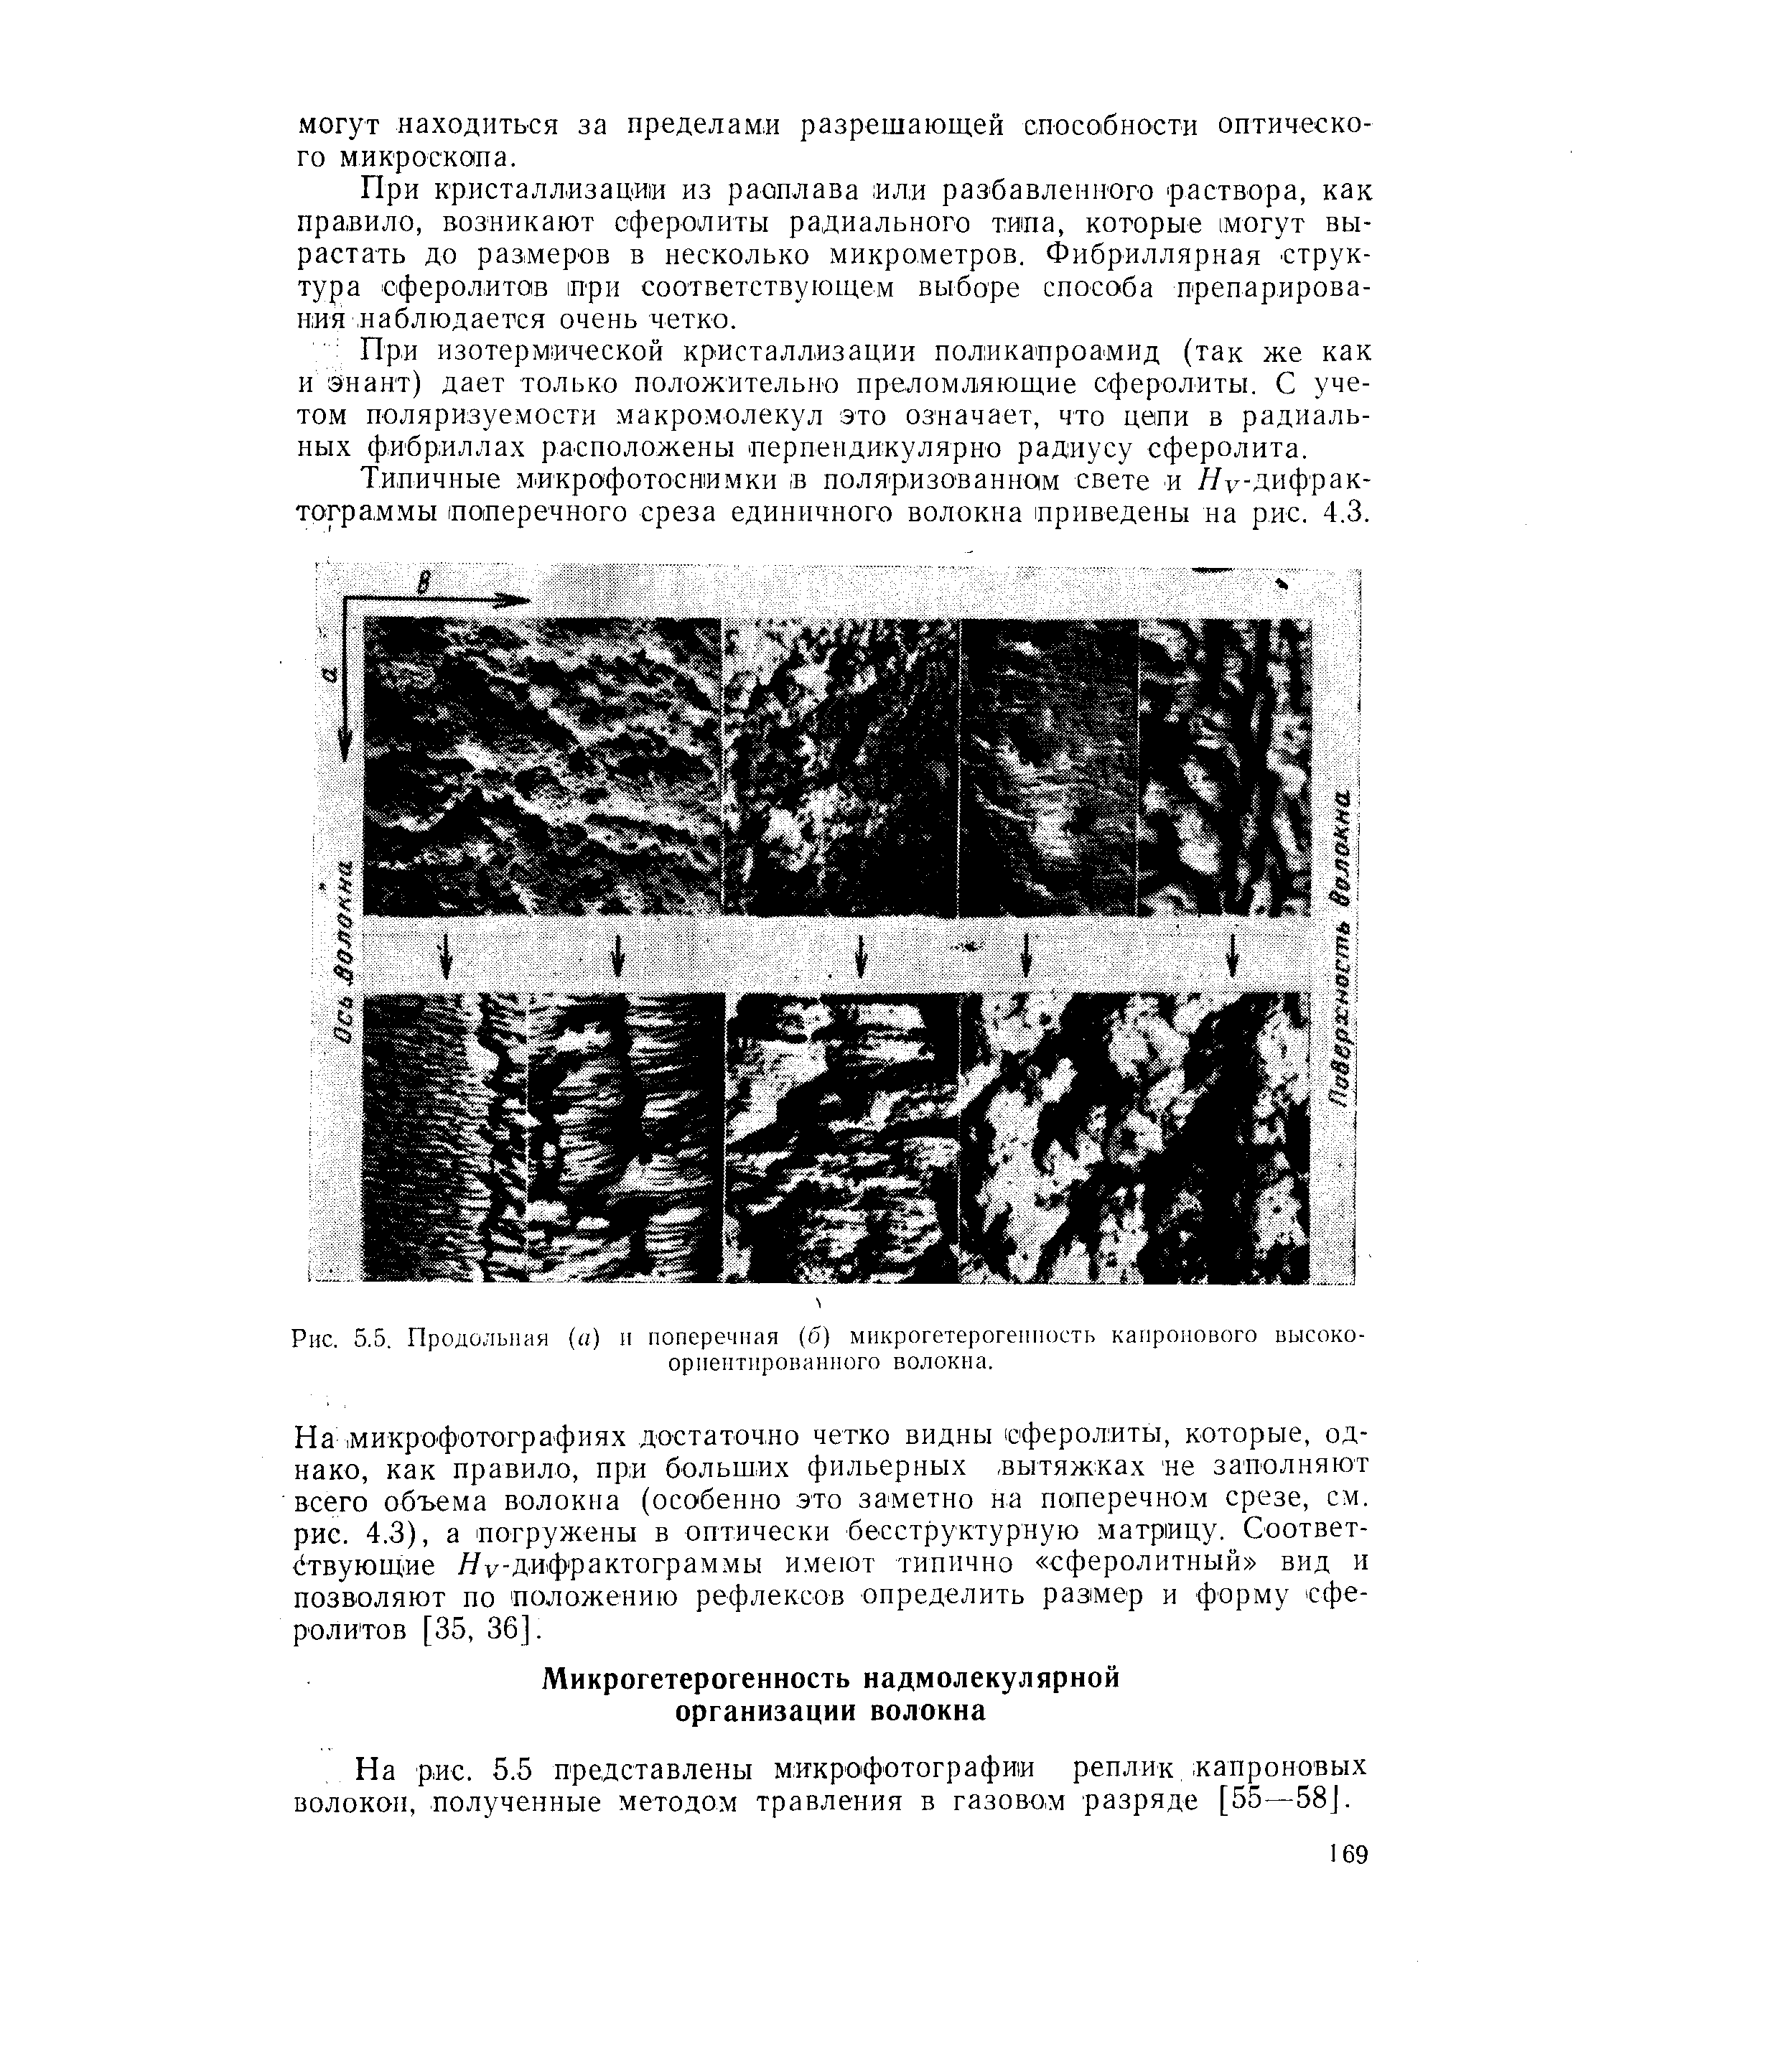 На рис. 5.5 представлены микрофотографии реплик, -капроновых волокон, полученные методом травления в газовом разряде [55—58].